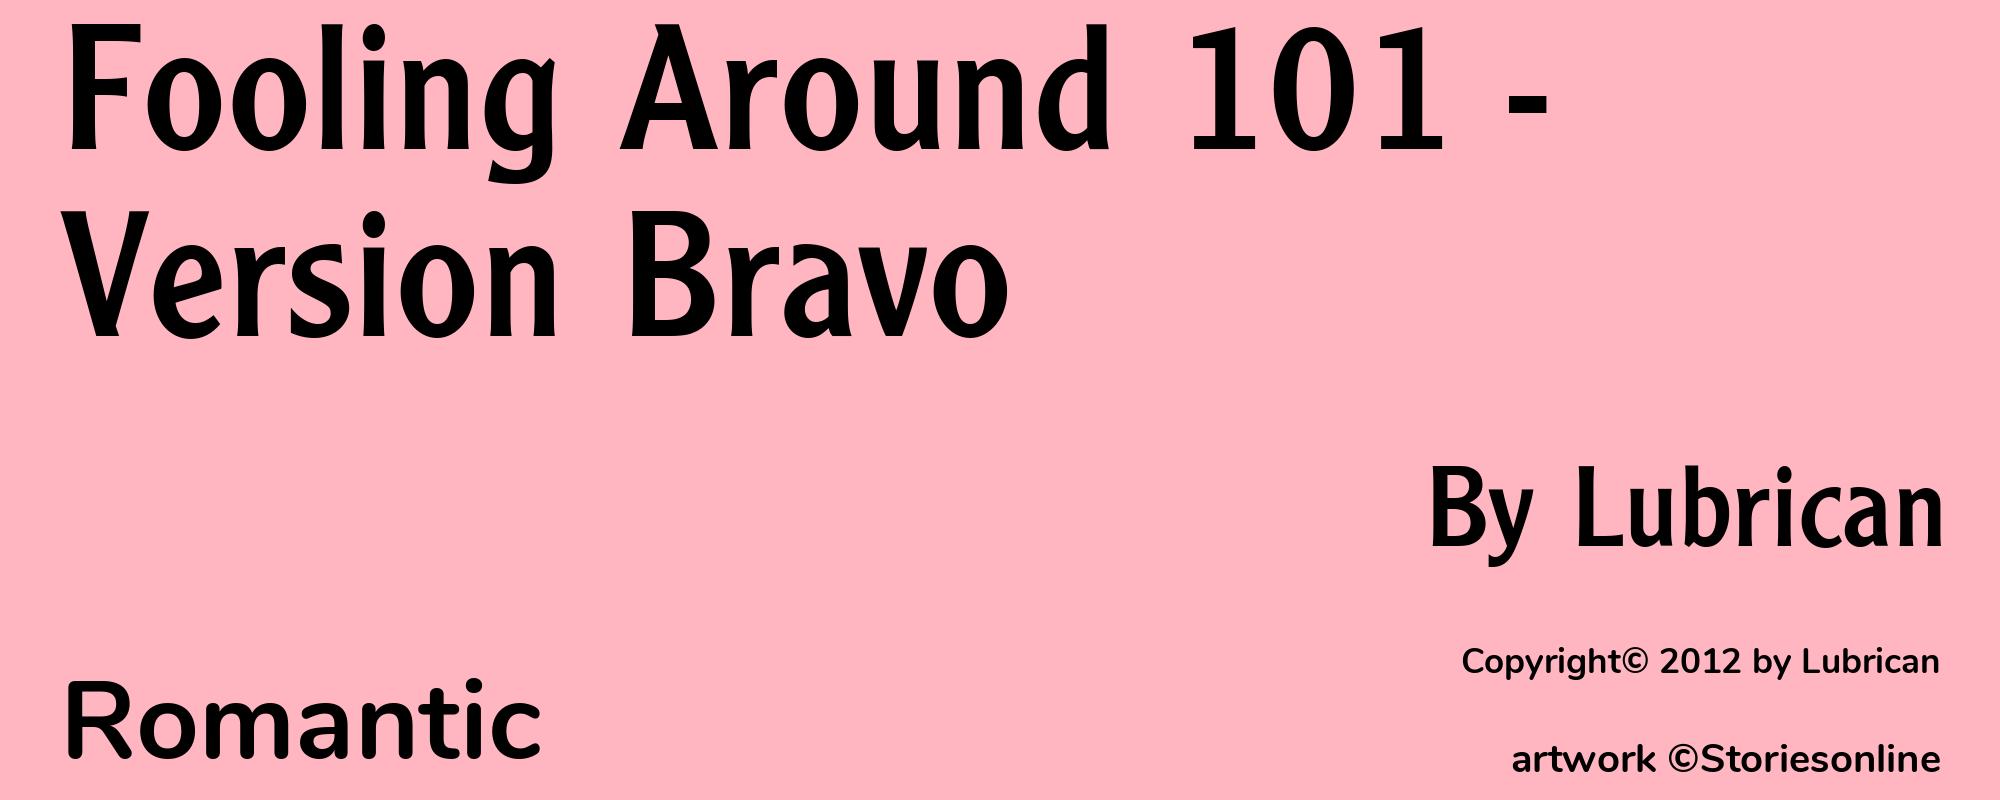 Fooling Around 101 - Version Bravo - Cover